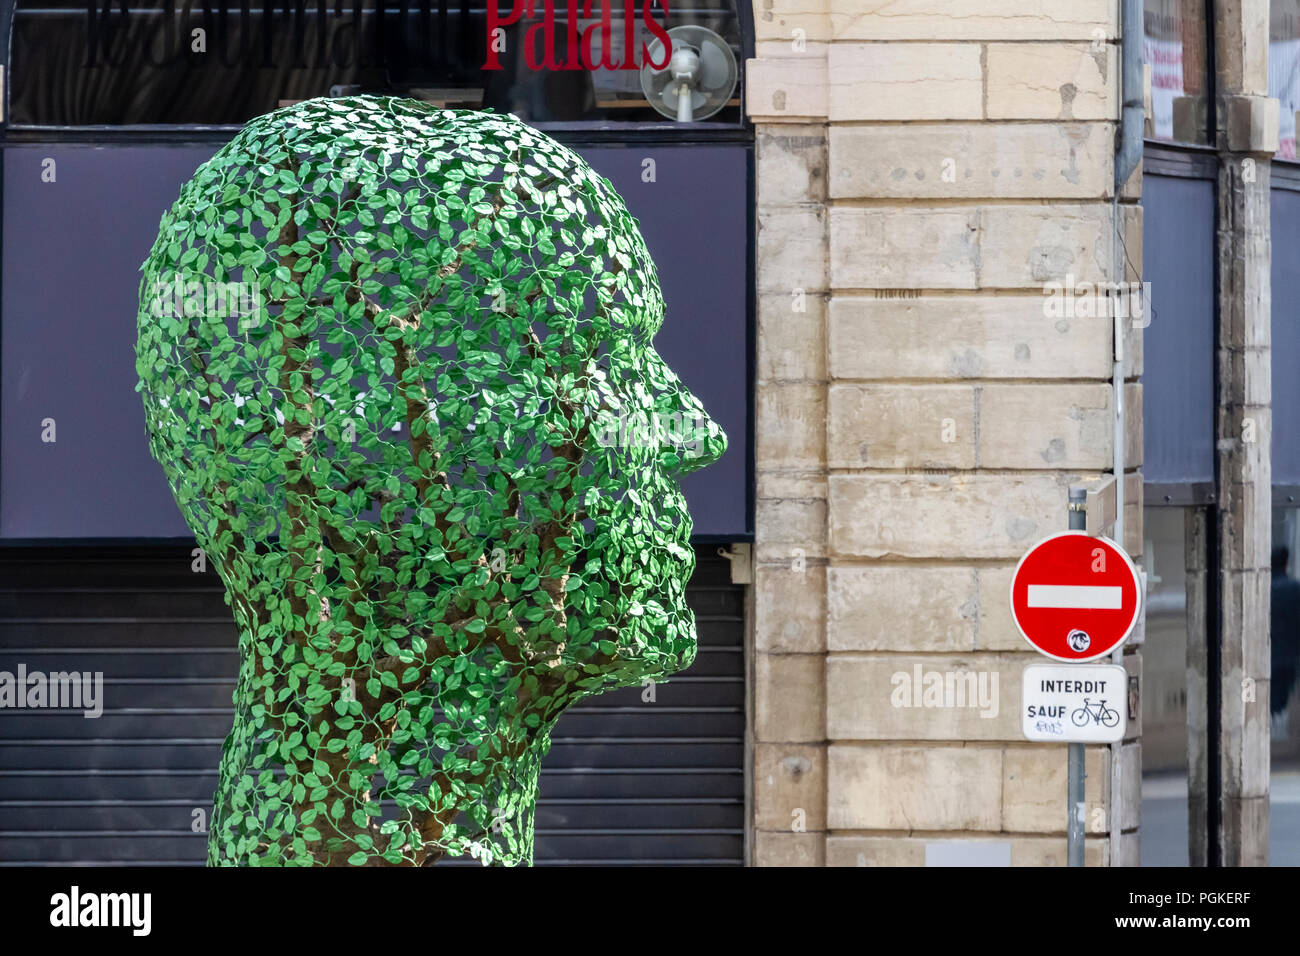 Digione, scultura in ferro battuto une forma di foglie che riproduce volto umano Banque D'Images